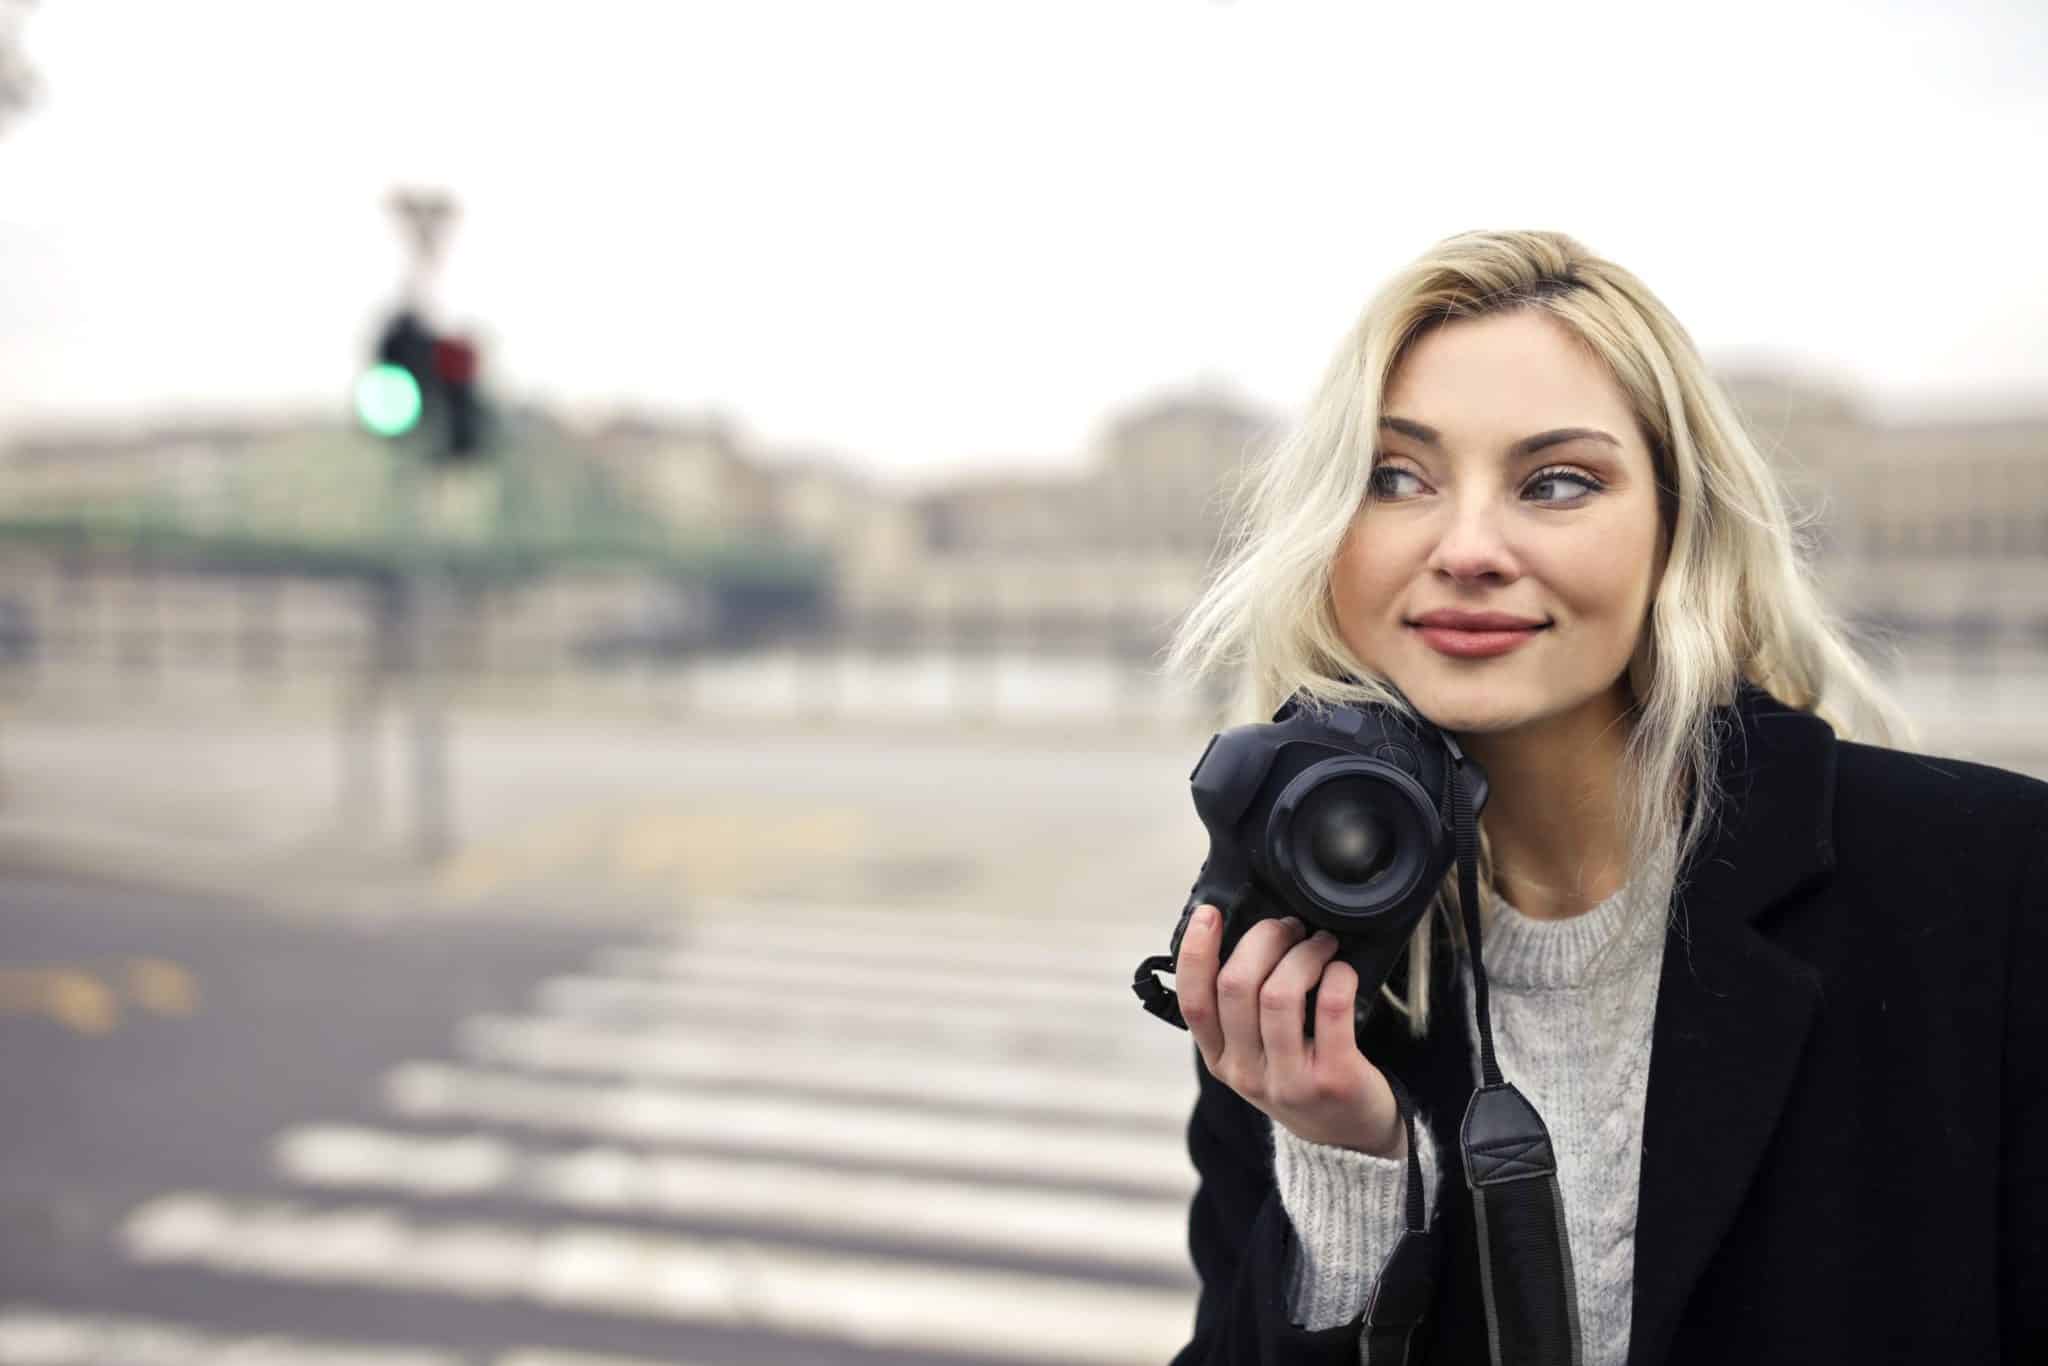 Eine junge Frau mit Kamera erkundet die Straßen, auf der Suche nach lebendigen Momenten. Bei LET IT CLICK verwandeln wir solche Augenblicke in unvergessliche Fotoshootings.